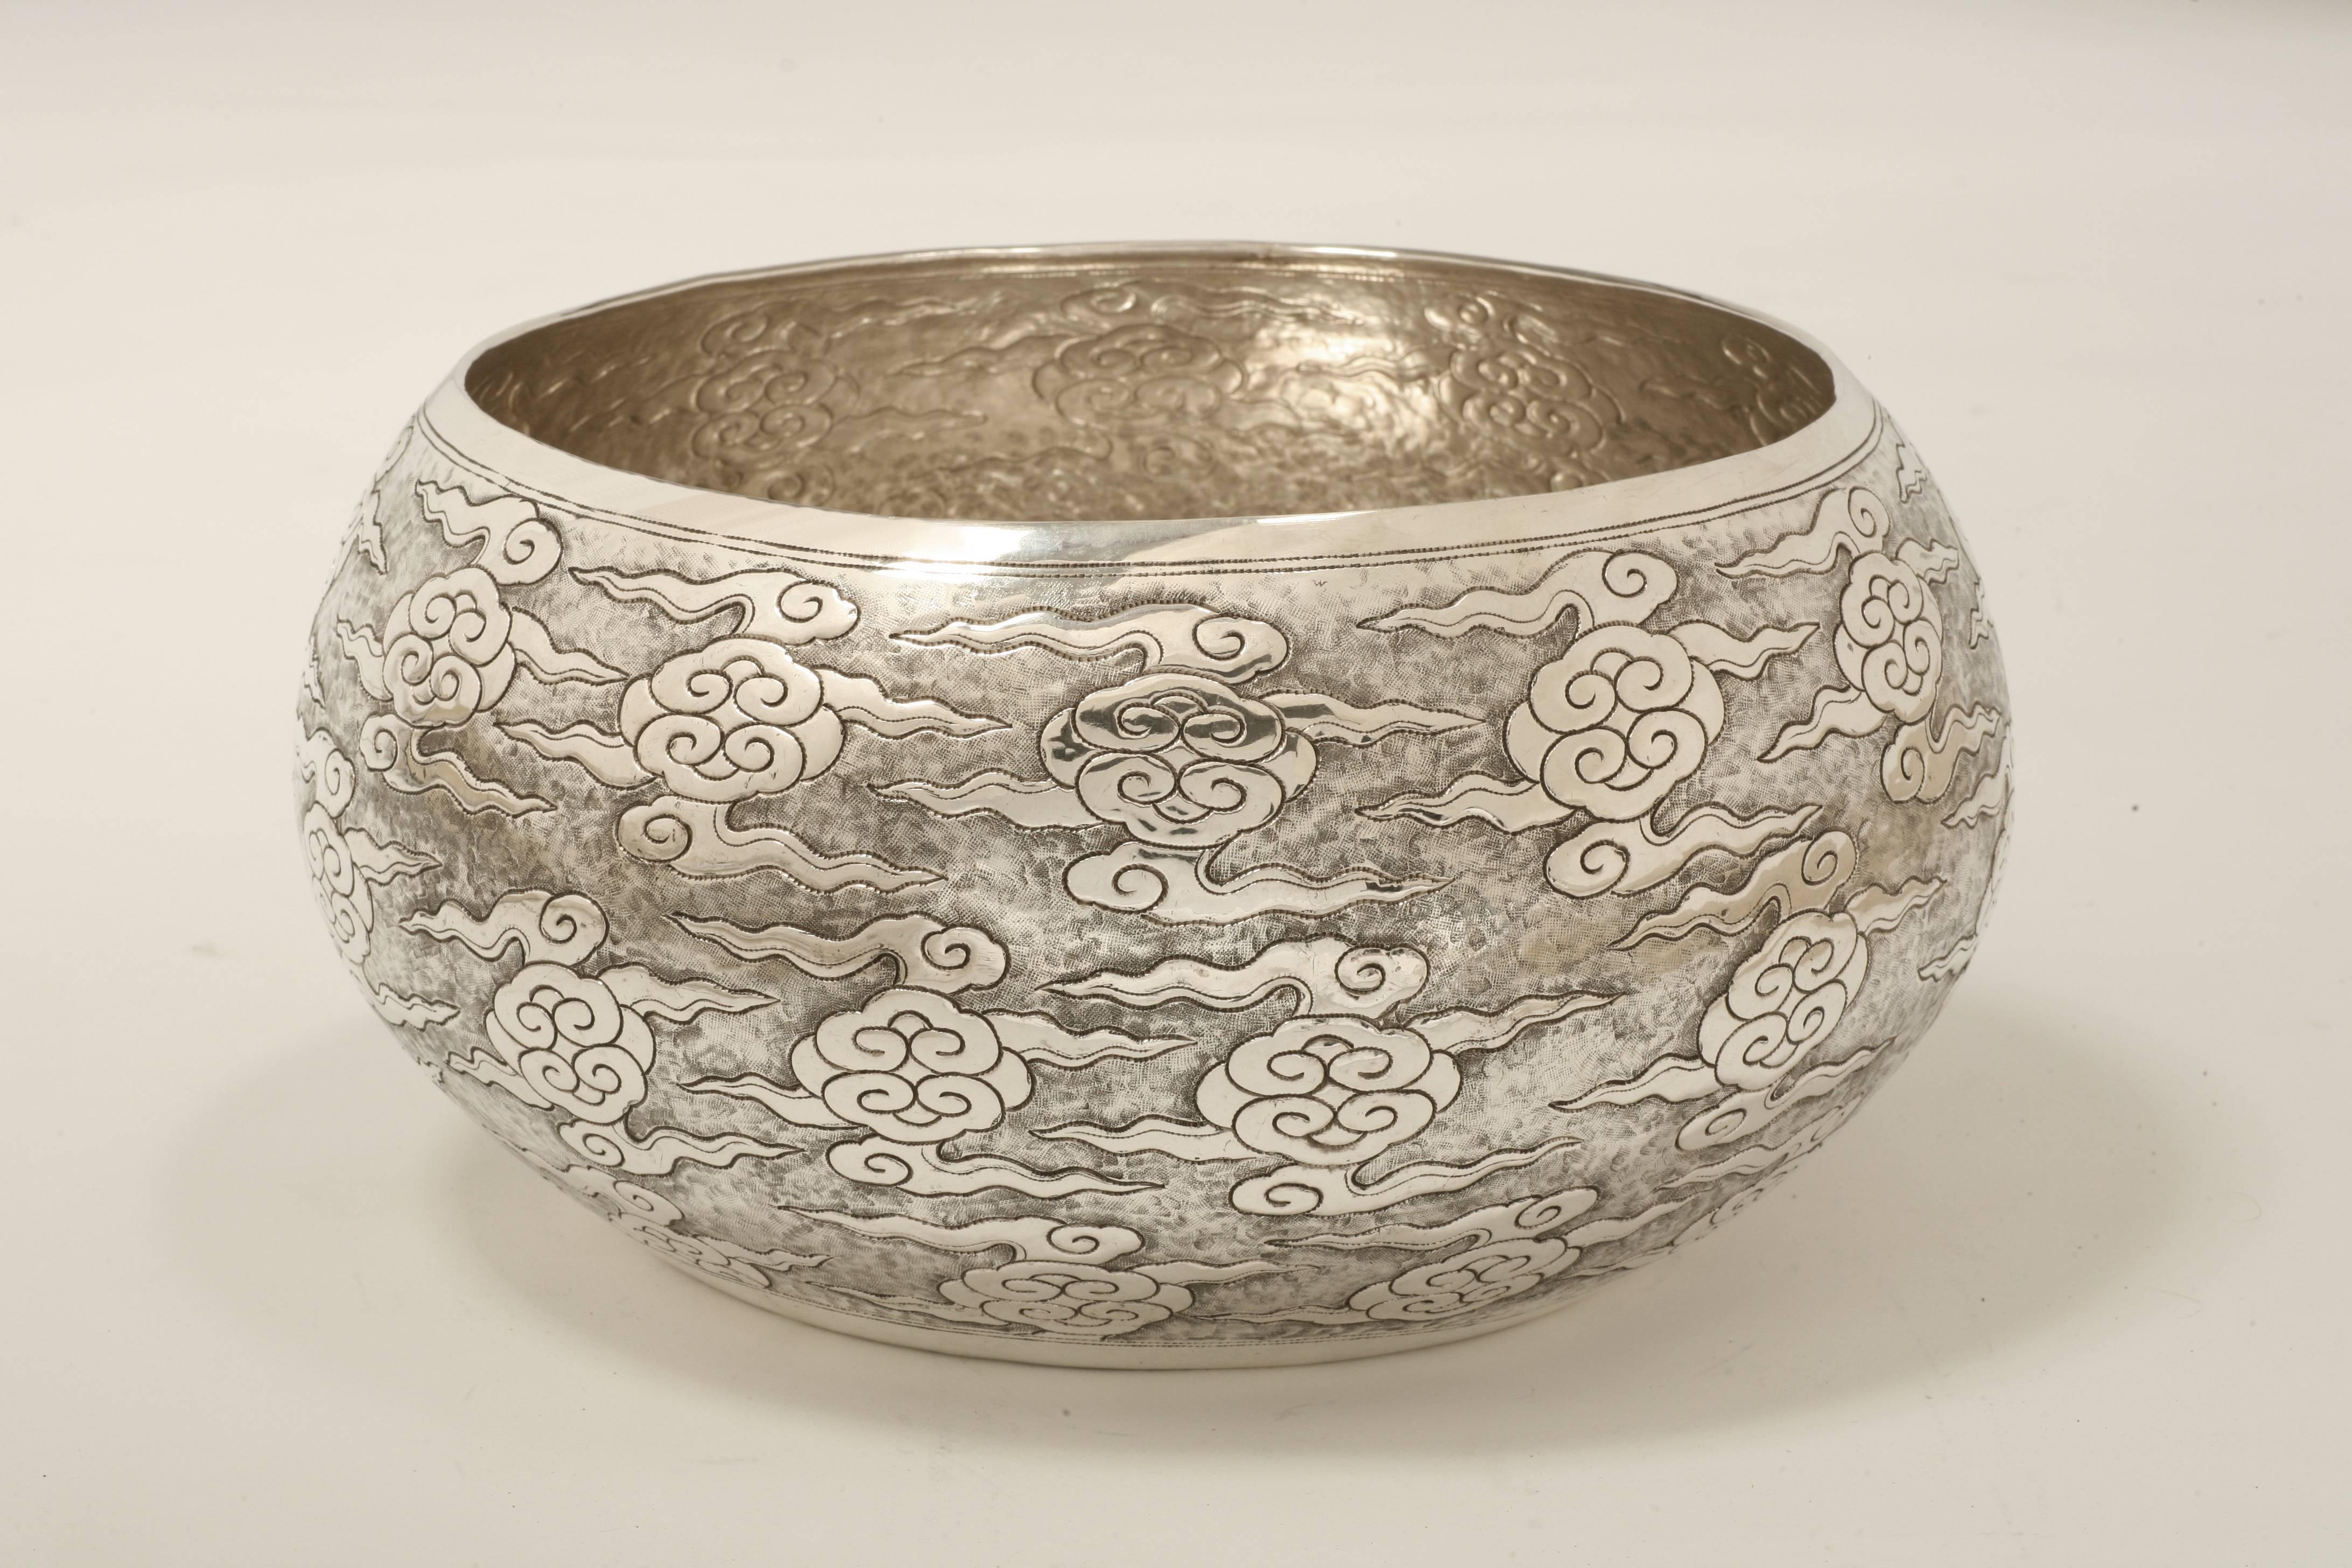 Die große zeitgenössische Schale aus massivem Silber ist fein ziseliert mit dem Wolkenmotiv Ruyi (As-you-wish-Symbol) und in anderen Größen erhältlich.
Das Silber ist zu 90 % rein.